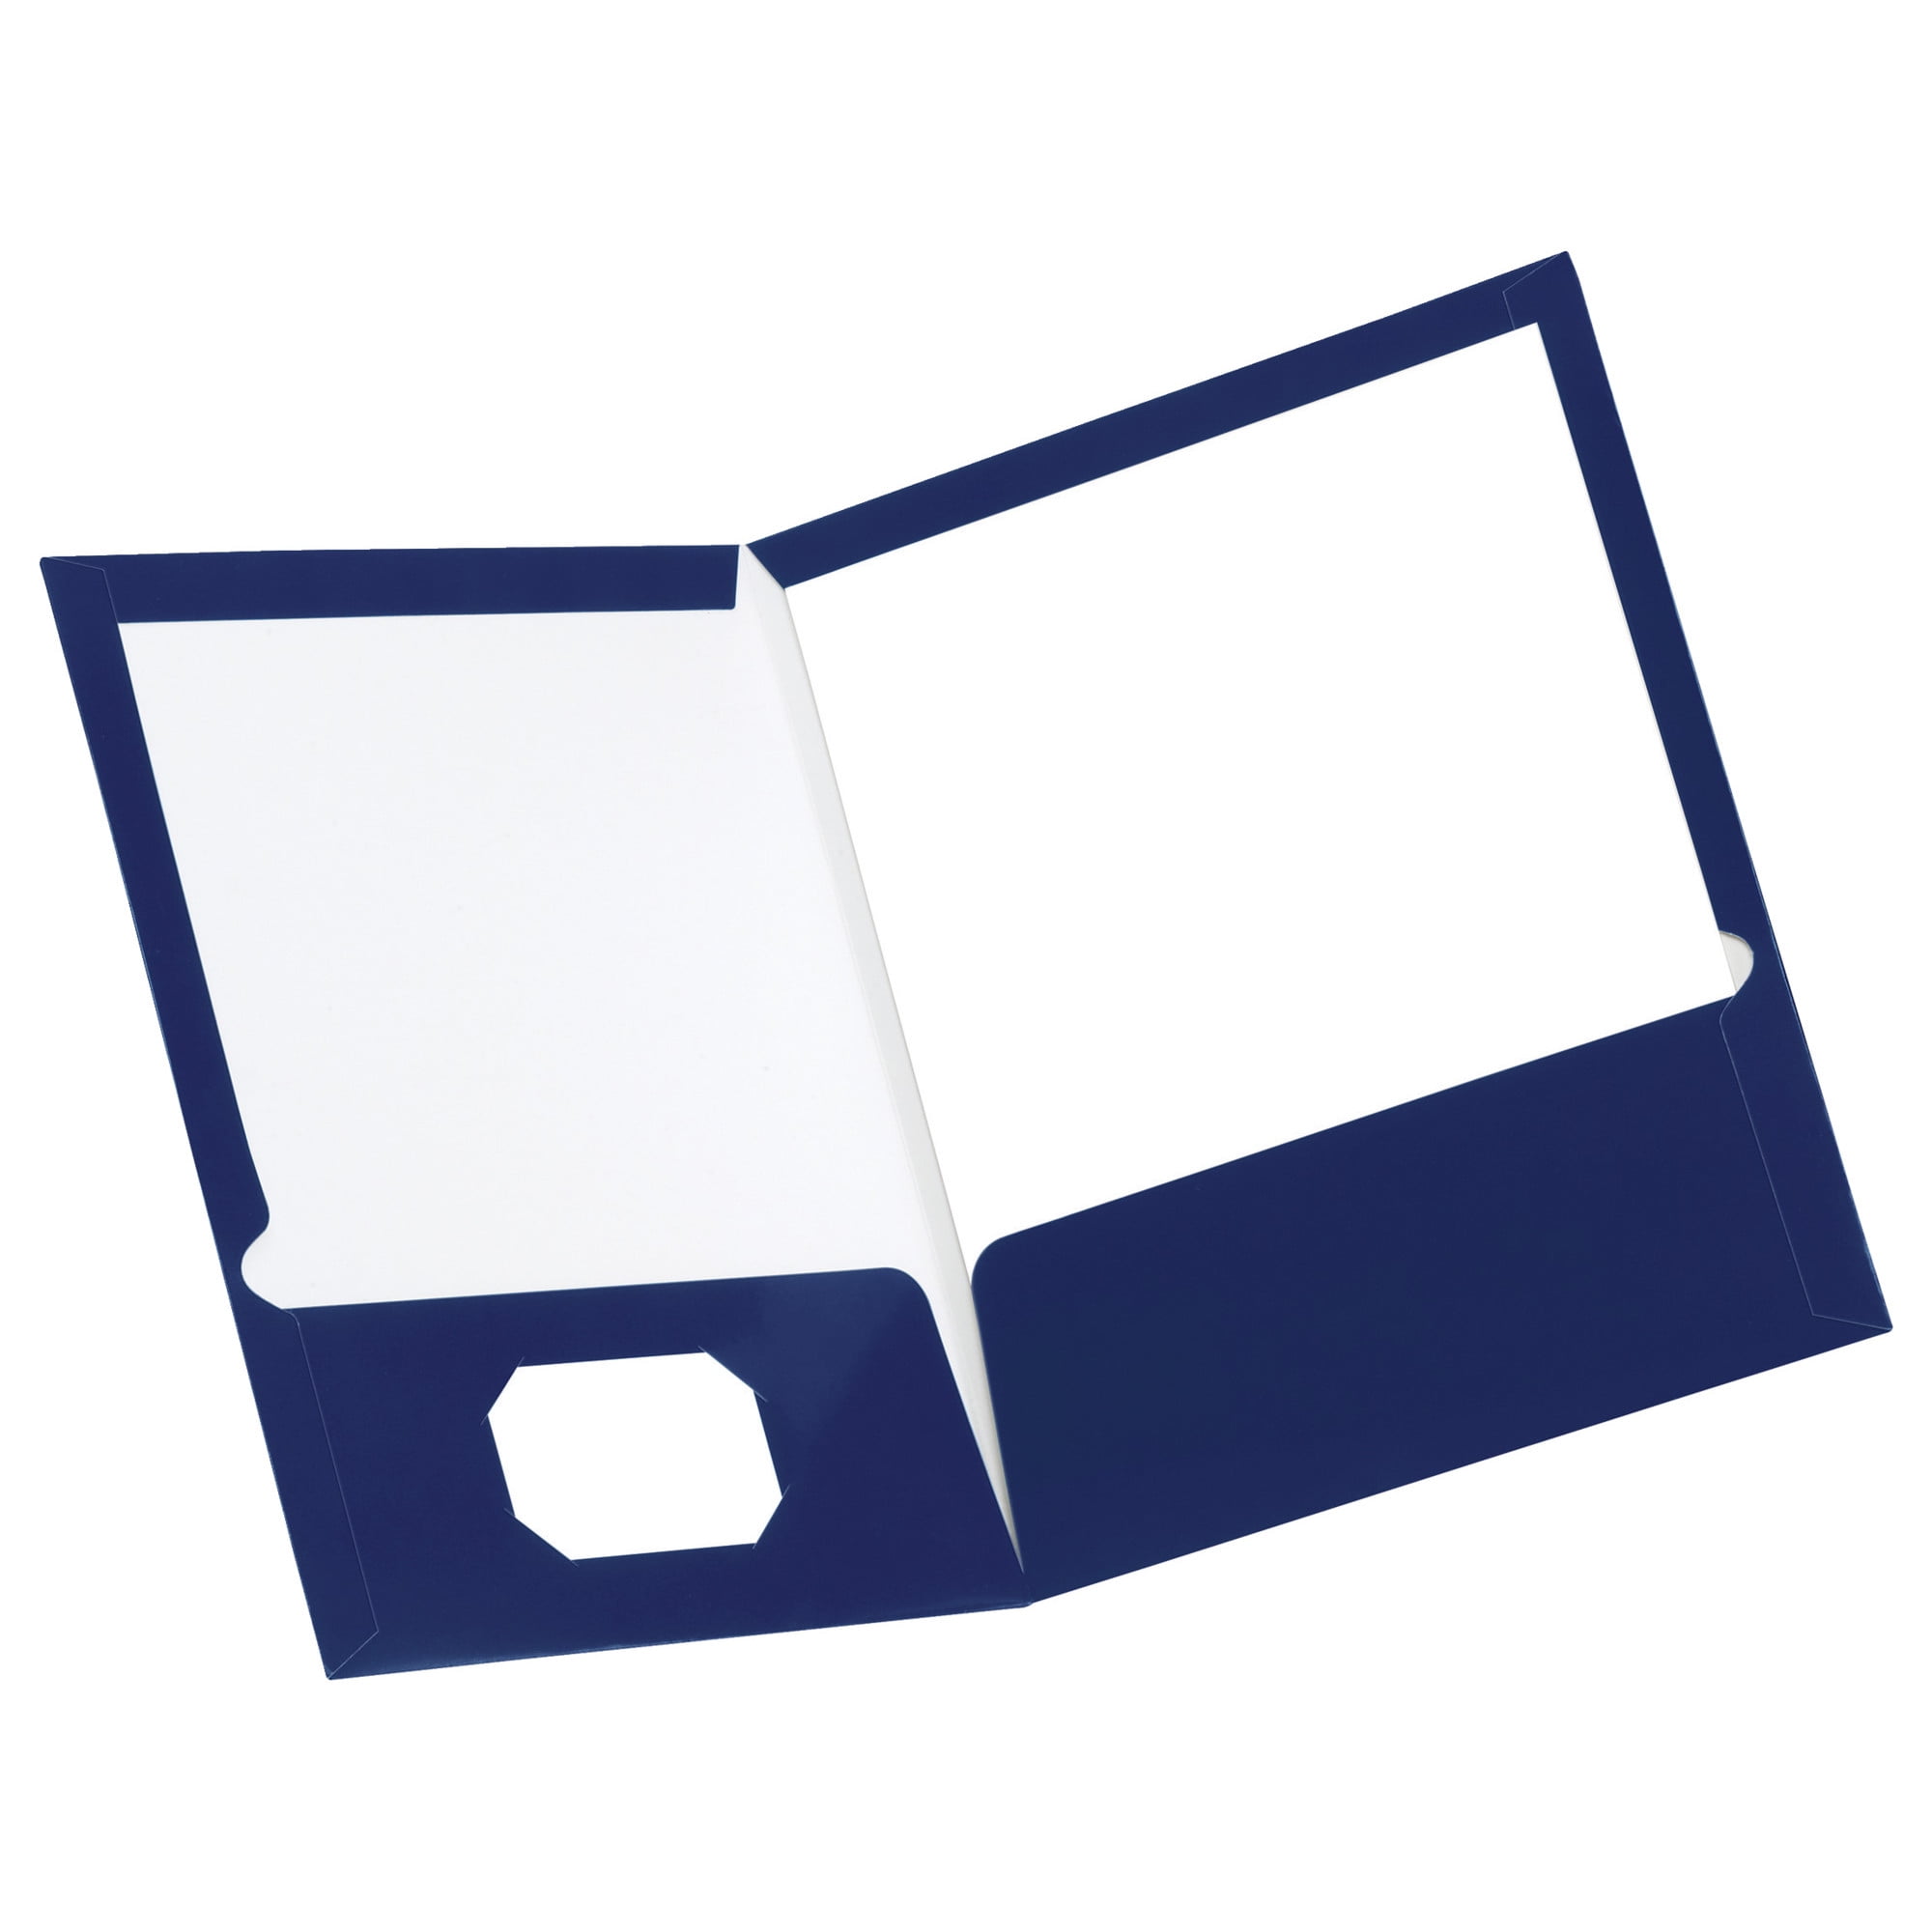 krigsskib Tilbagekaldelse Sømand Oxford Laminated 2-Pocket Folder, Dark Blue, Pack of 25 - Walmart.com